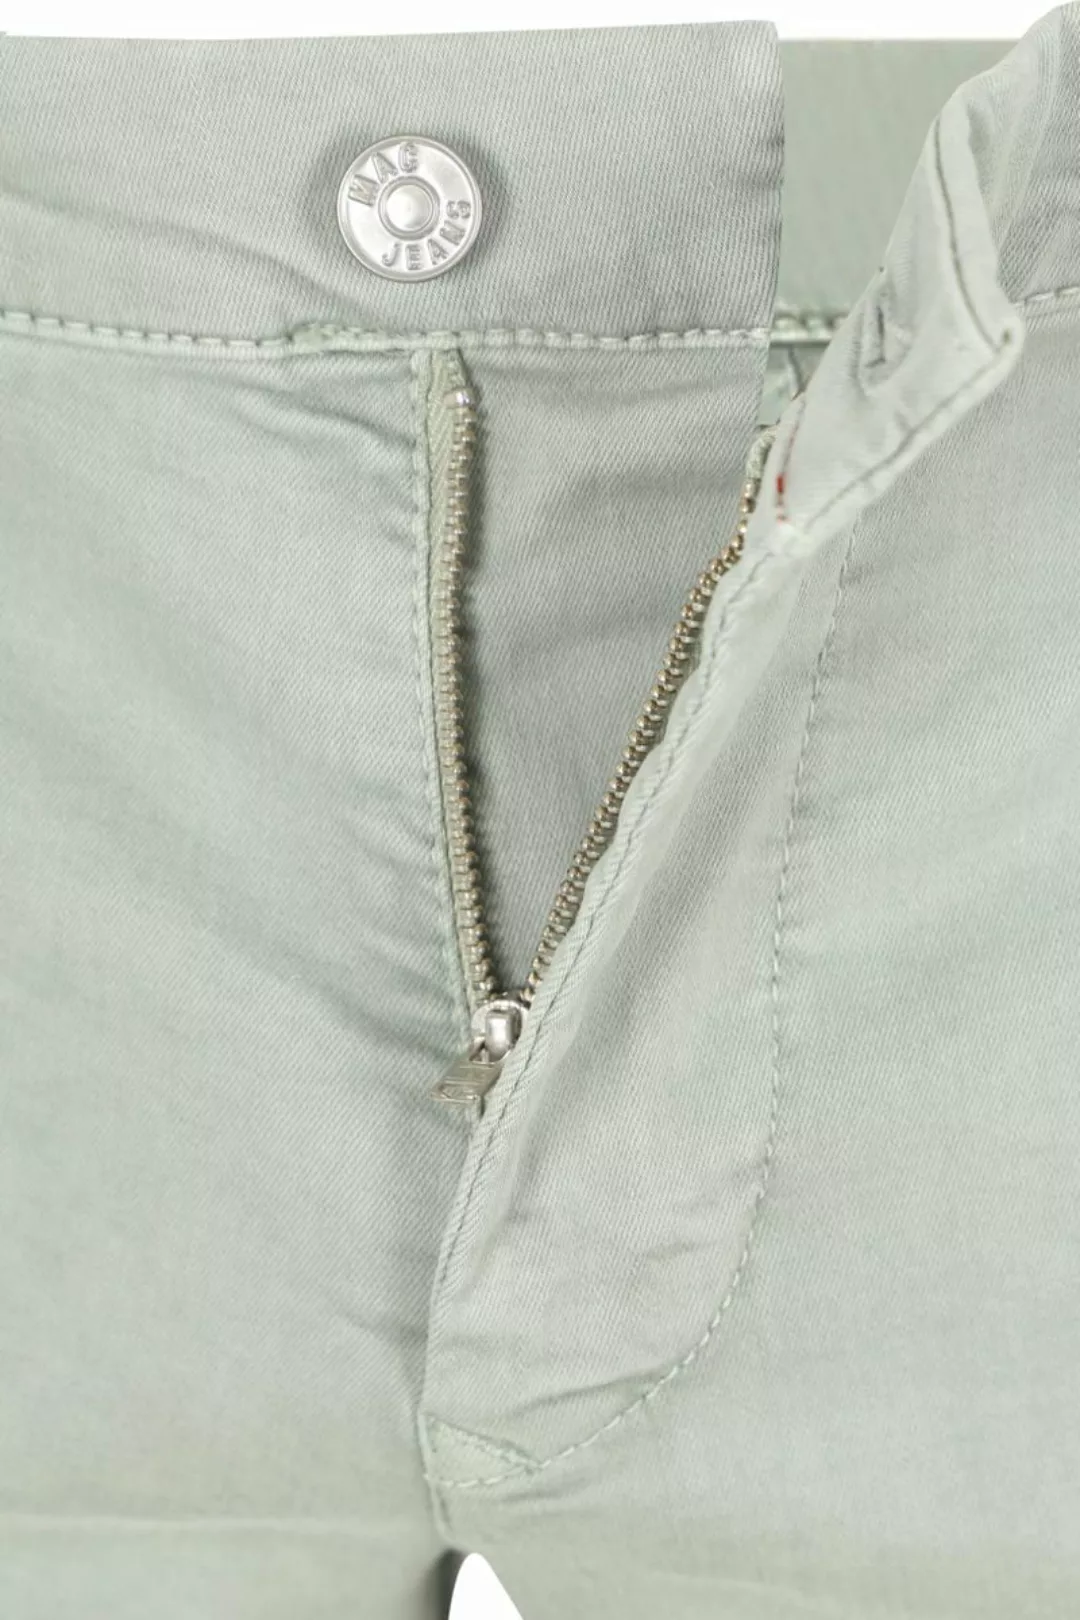 Mac Jeans Driver Pants Hellgrün - Größe W 32 - L 34 günstig online kaufen